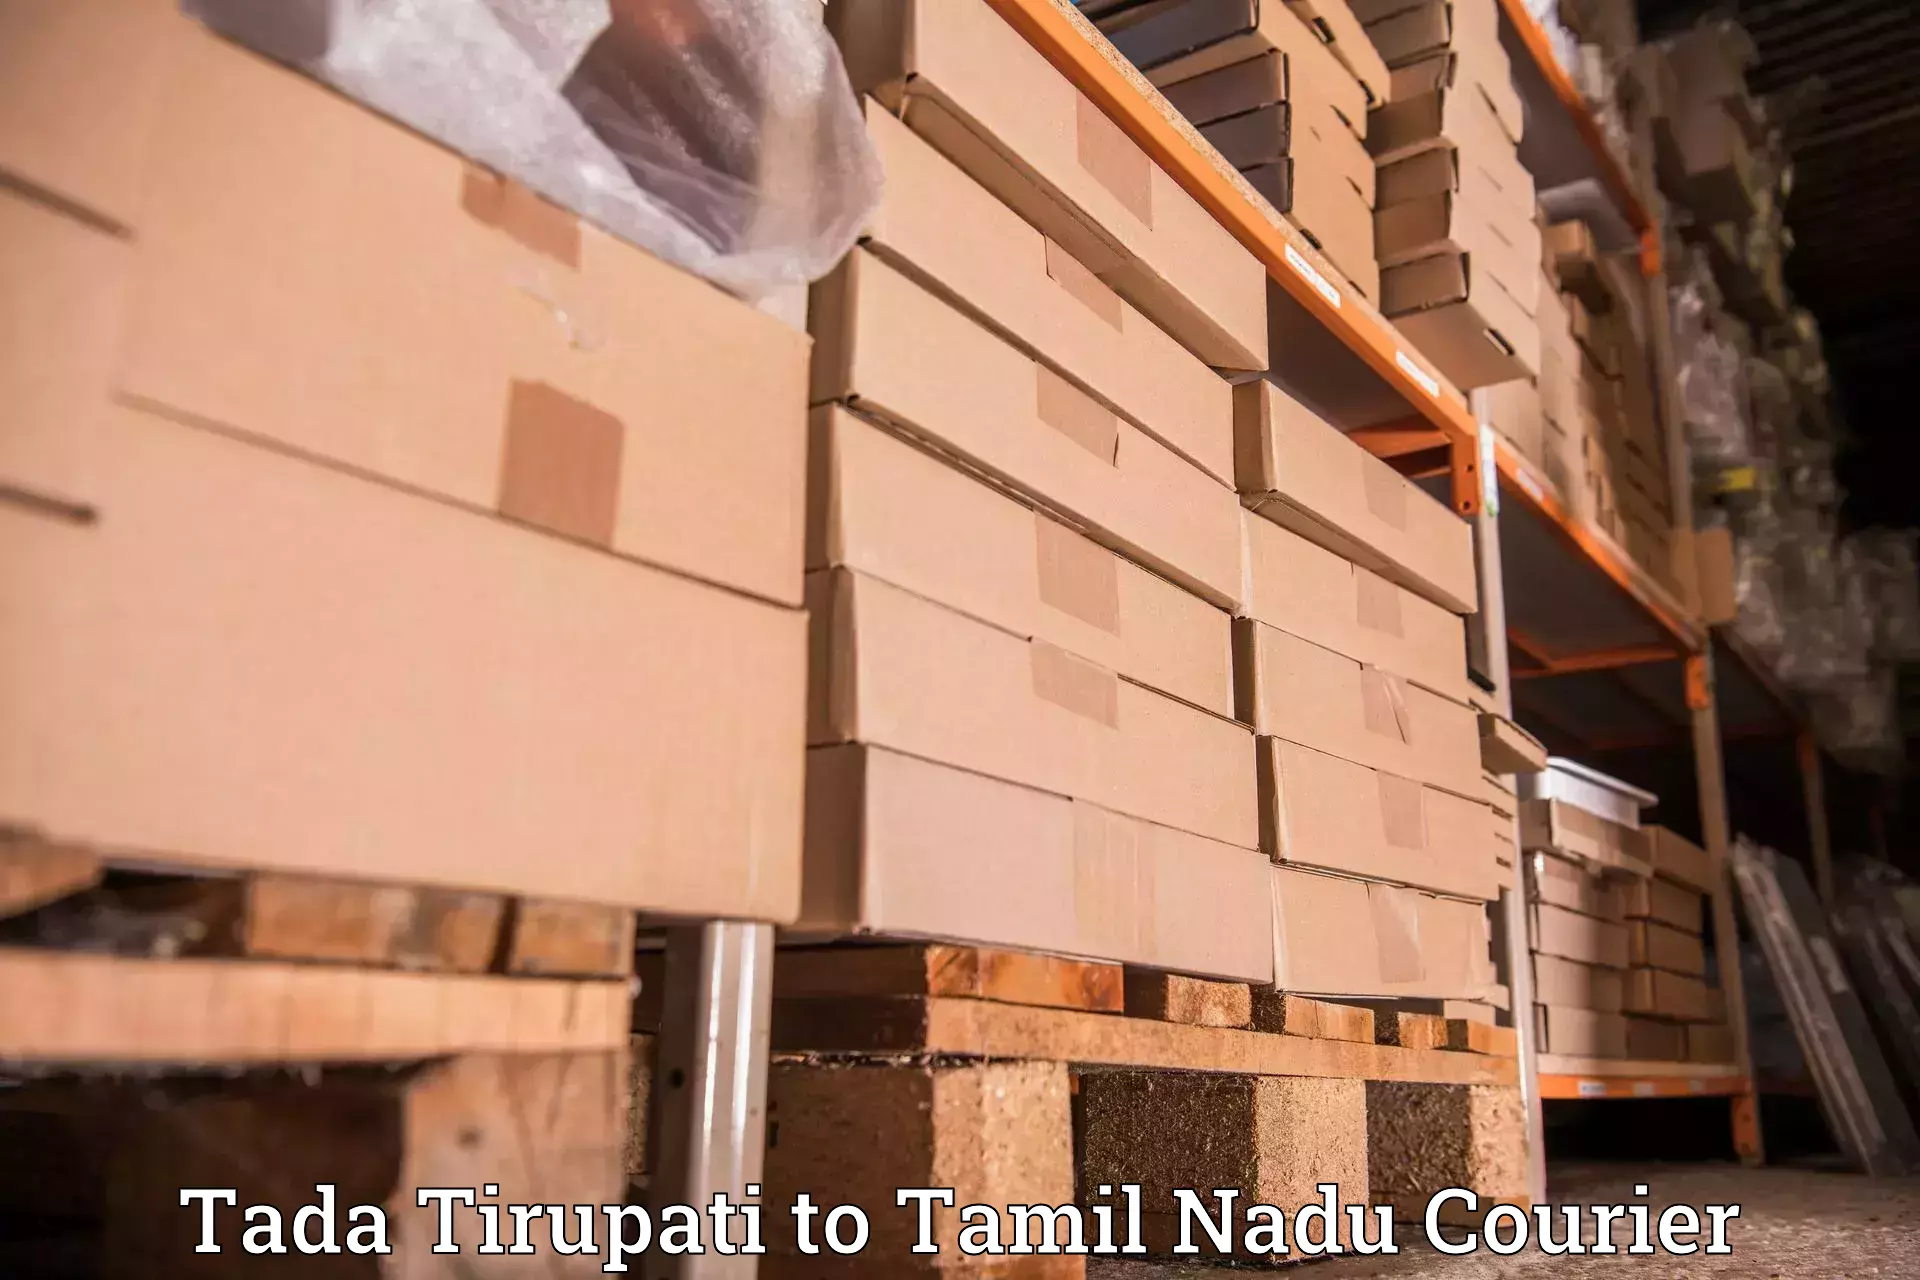 Optimized delivery routes Tada Tirupati to Palladam